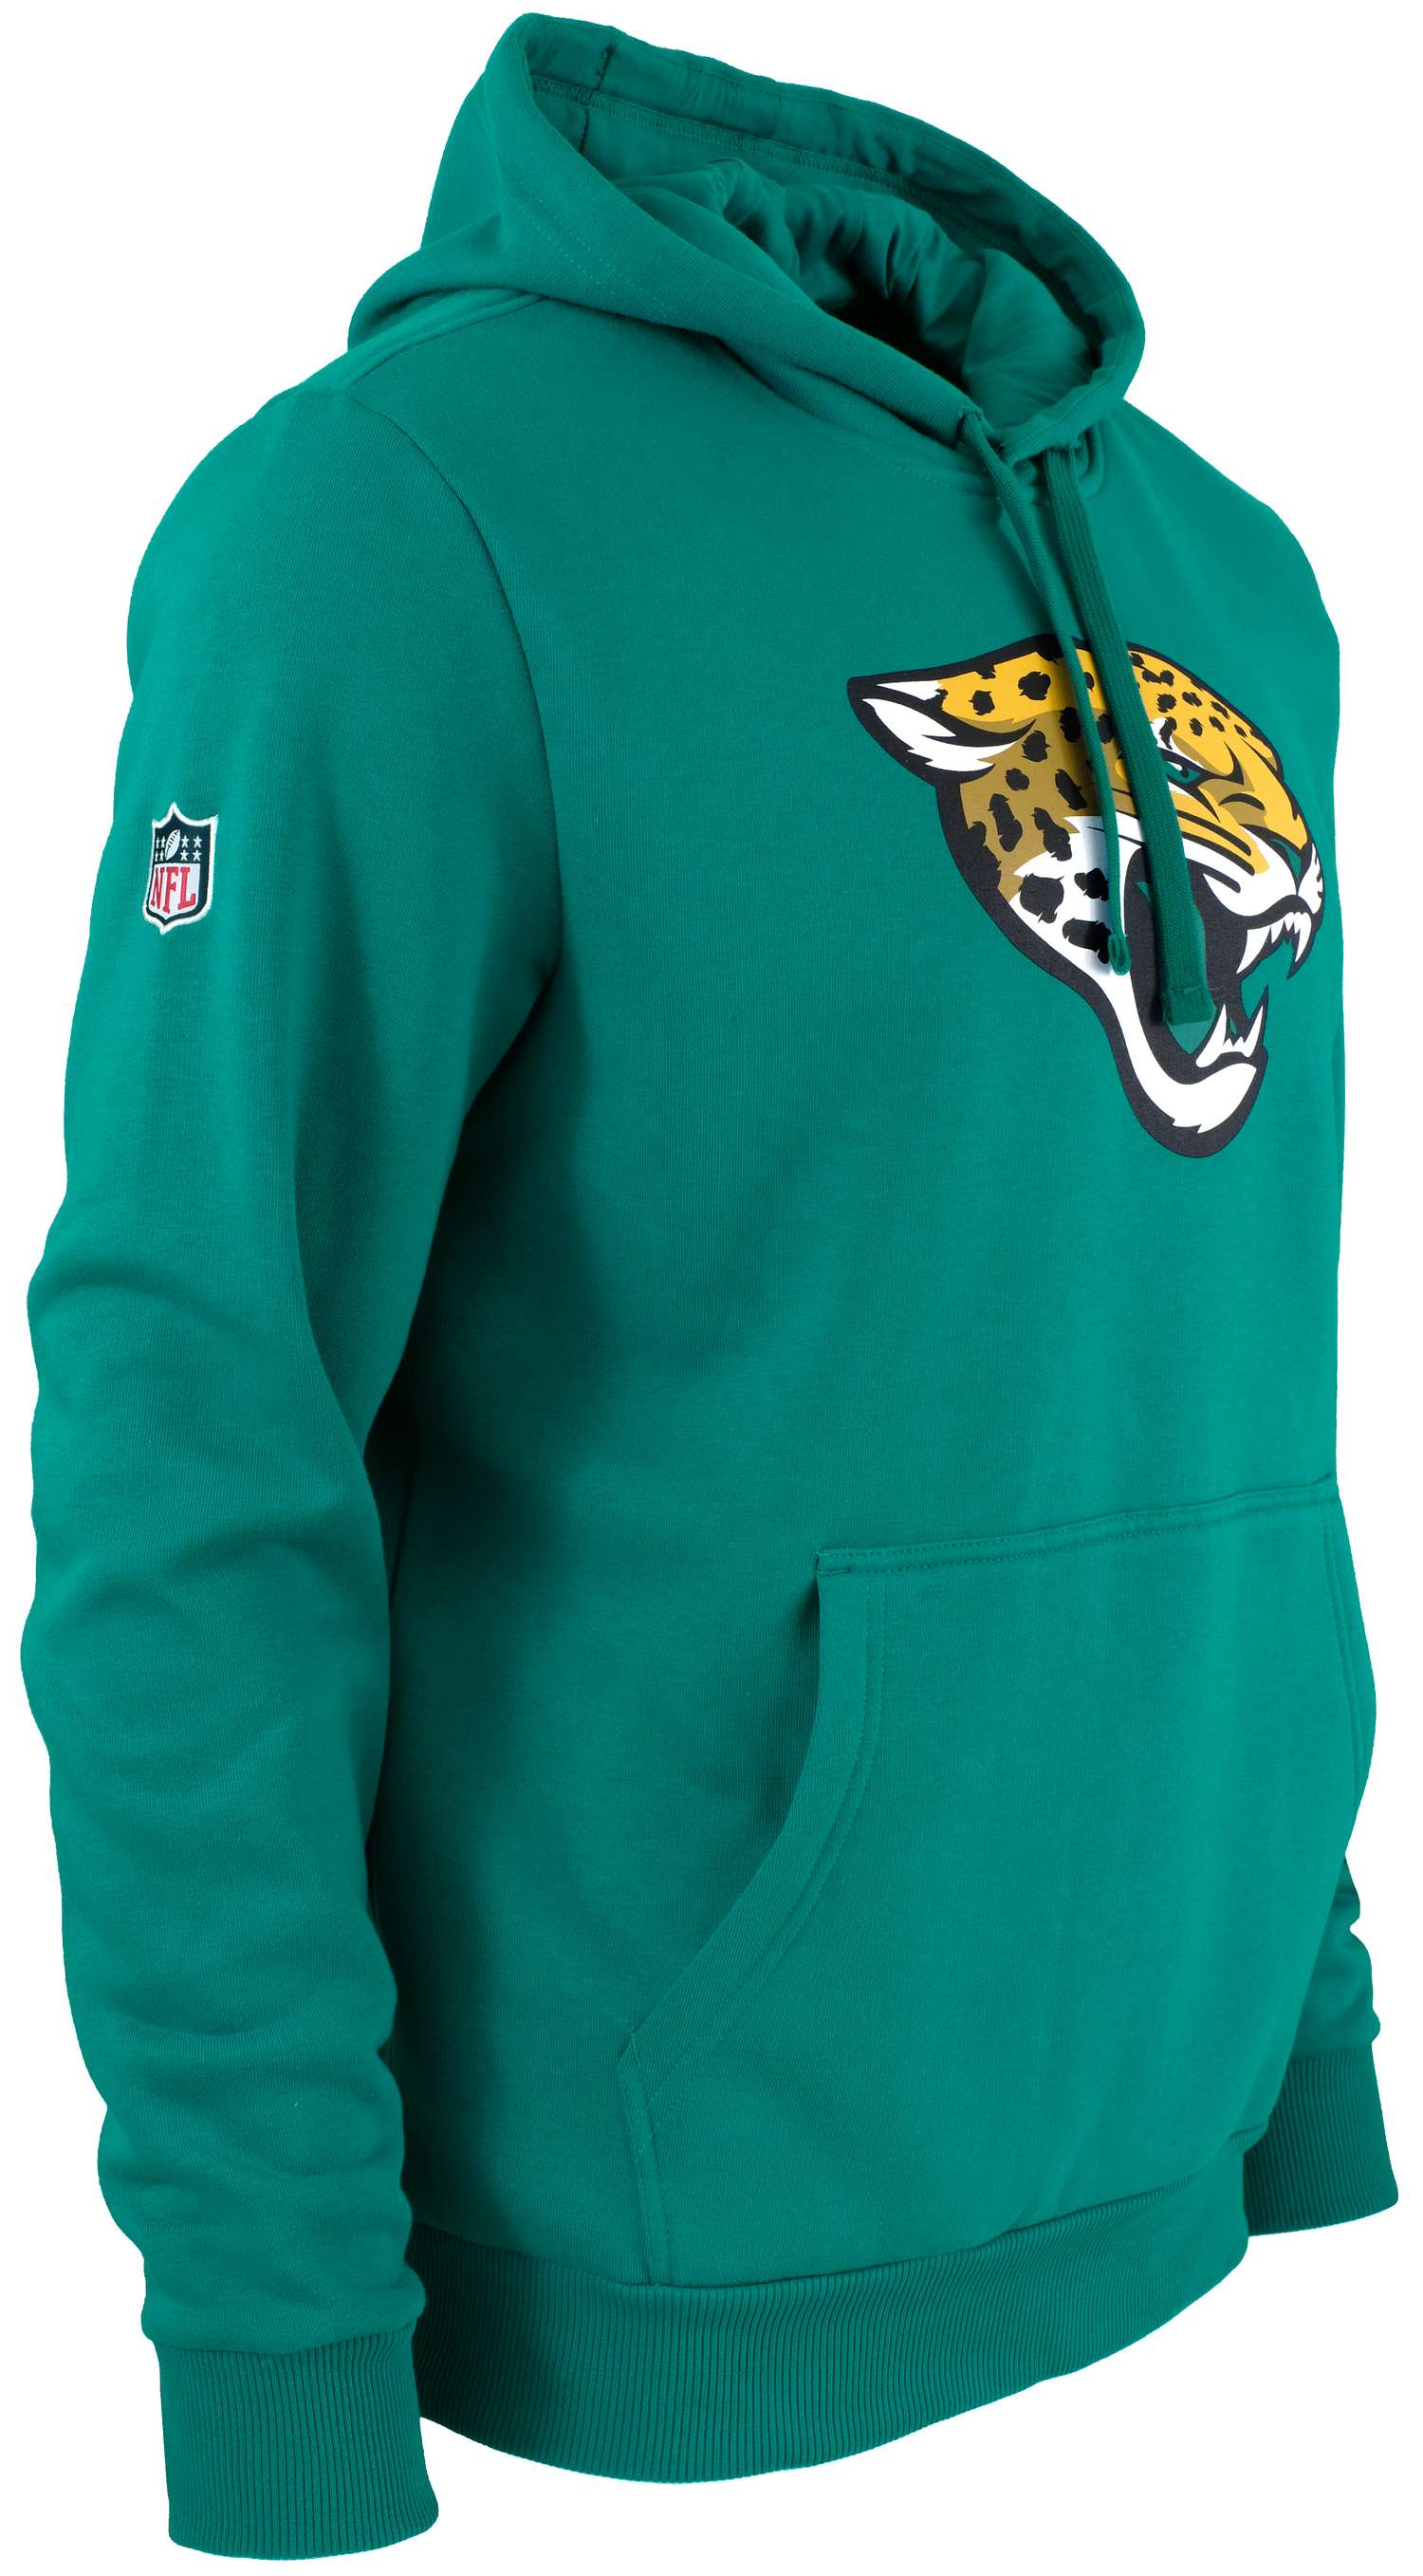 New Era - NFL Jacksonville Jaguars Team Logo Hoodie